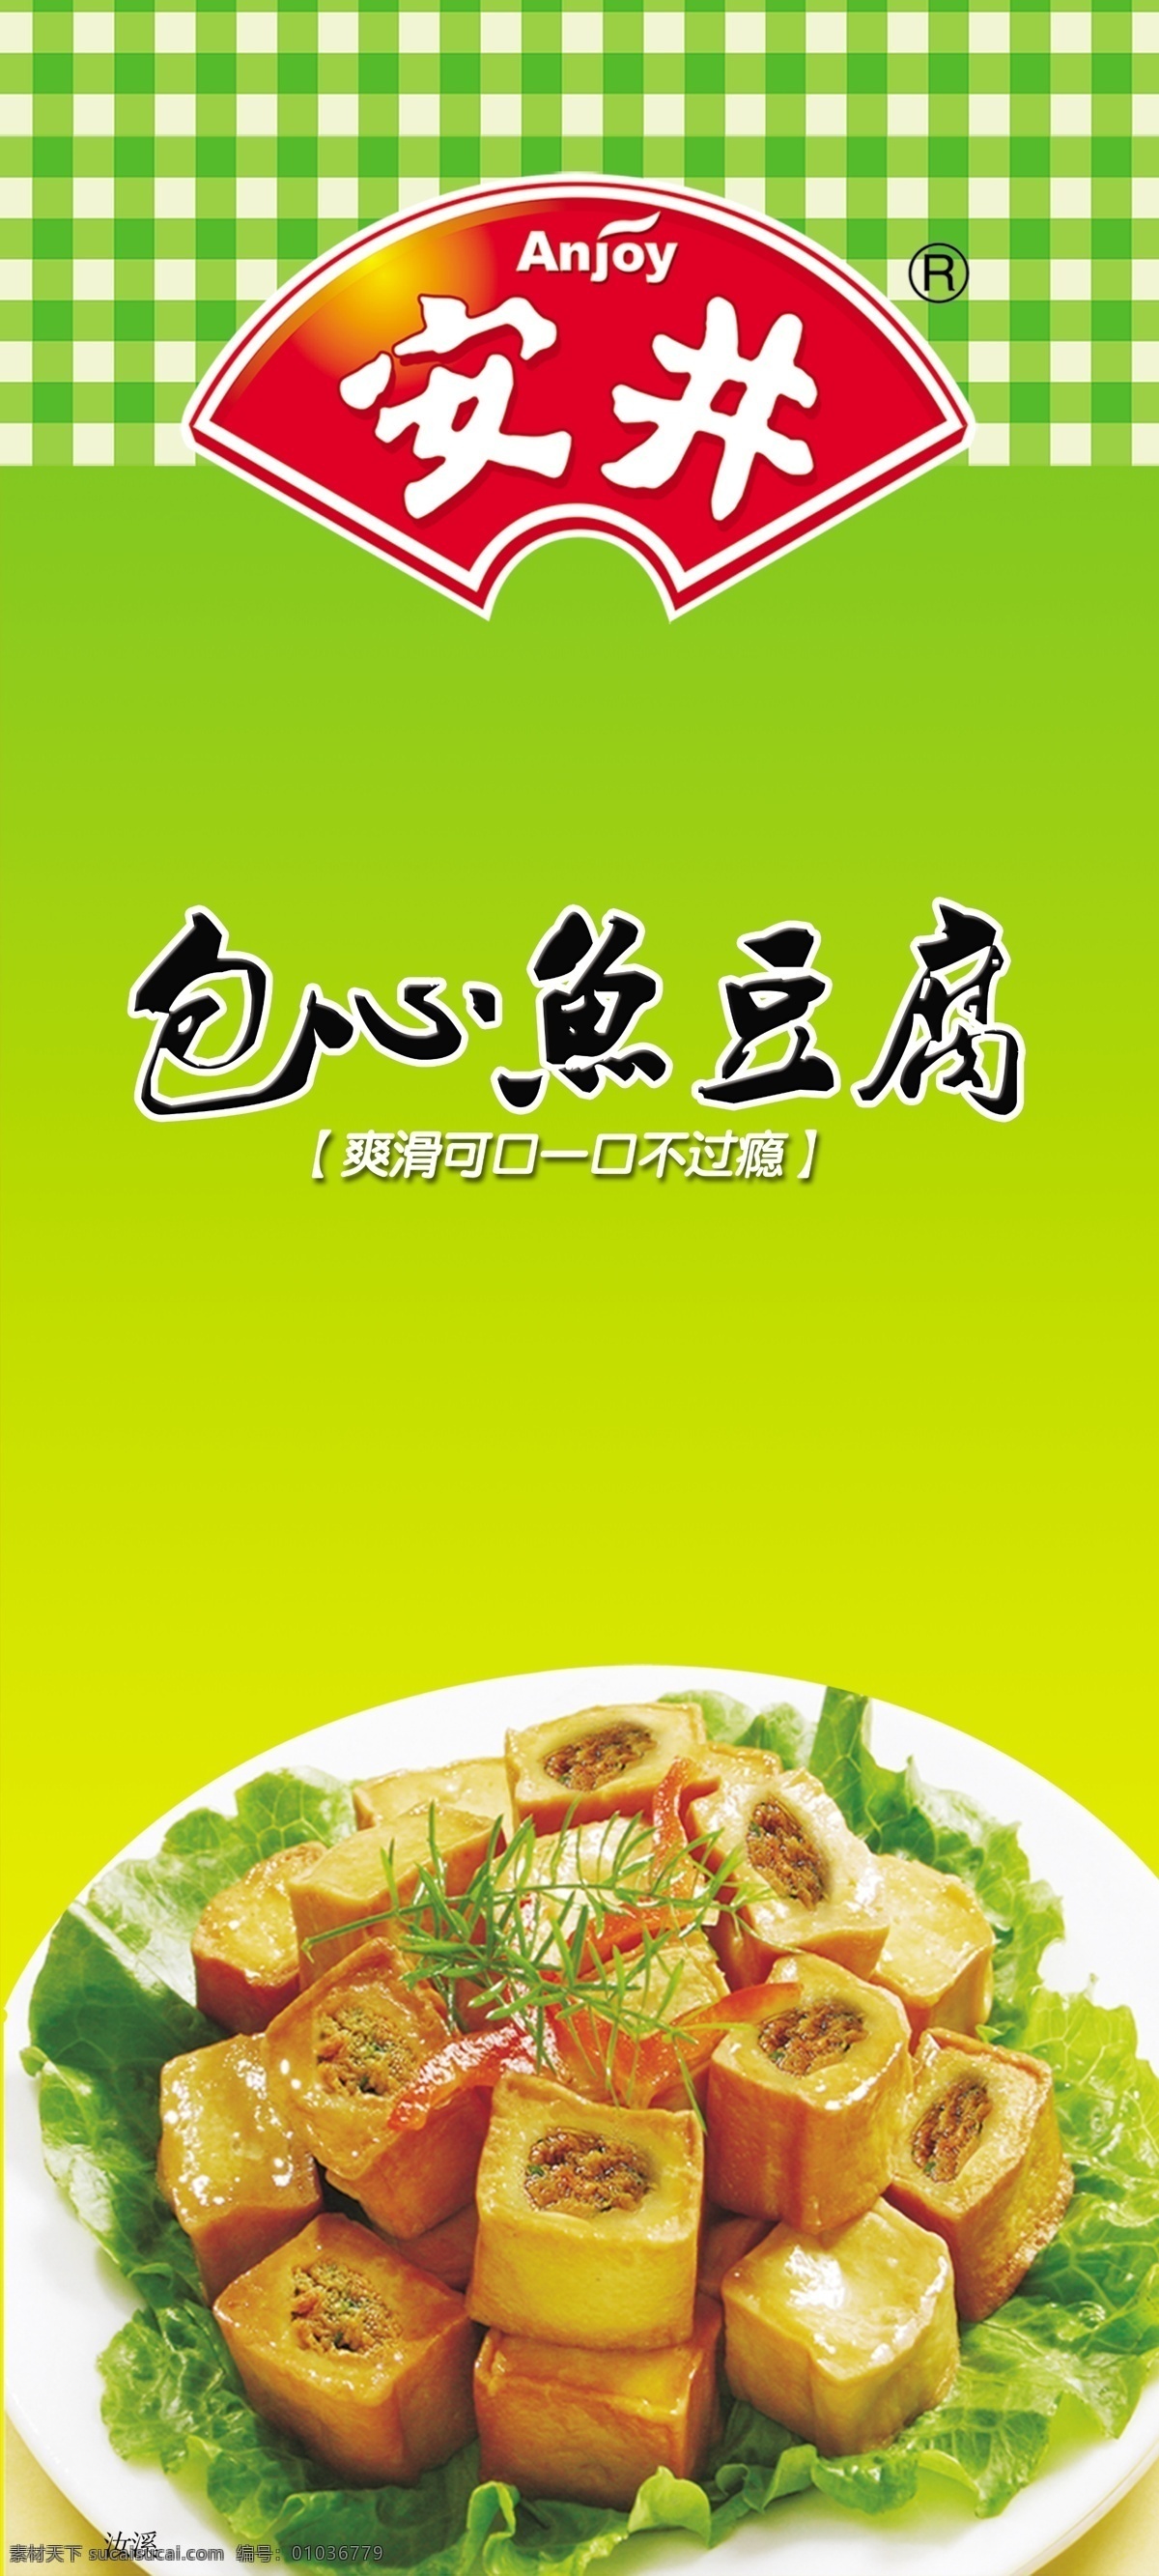 安井 豆腐 鱼冻 货 食品 安井豆腐鱼 豆腐鱼 冻货食品 食品展示